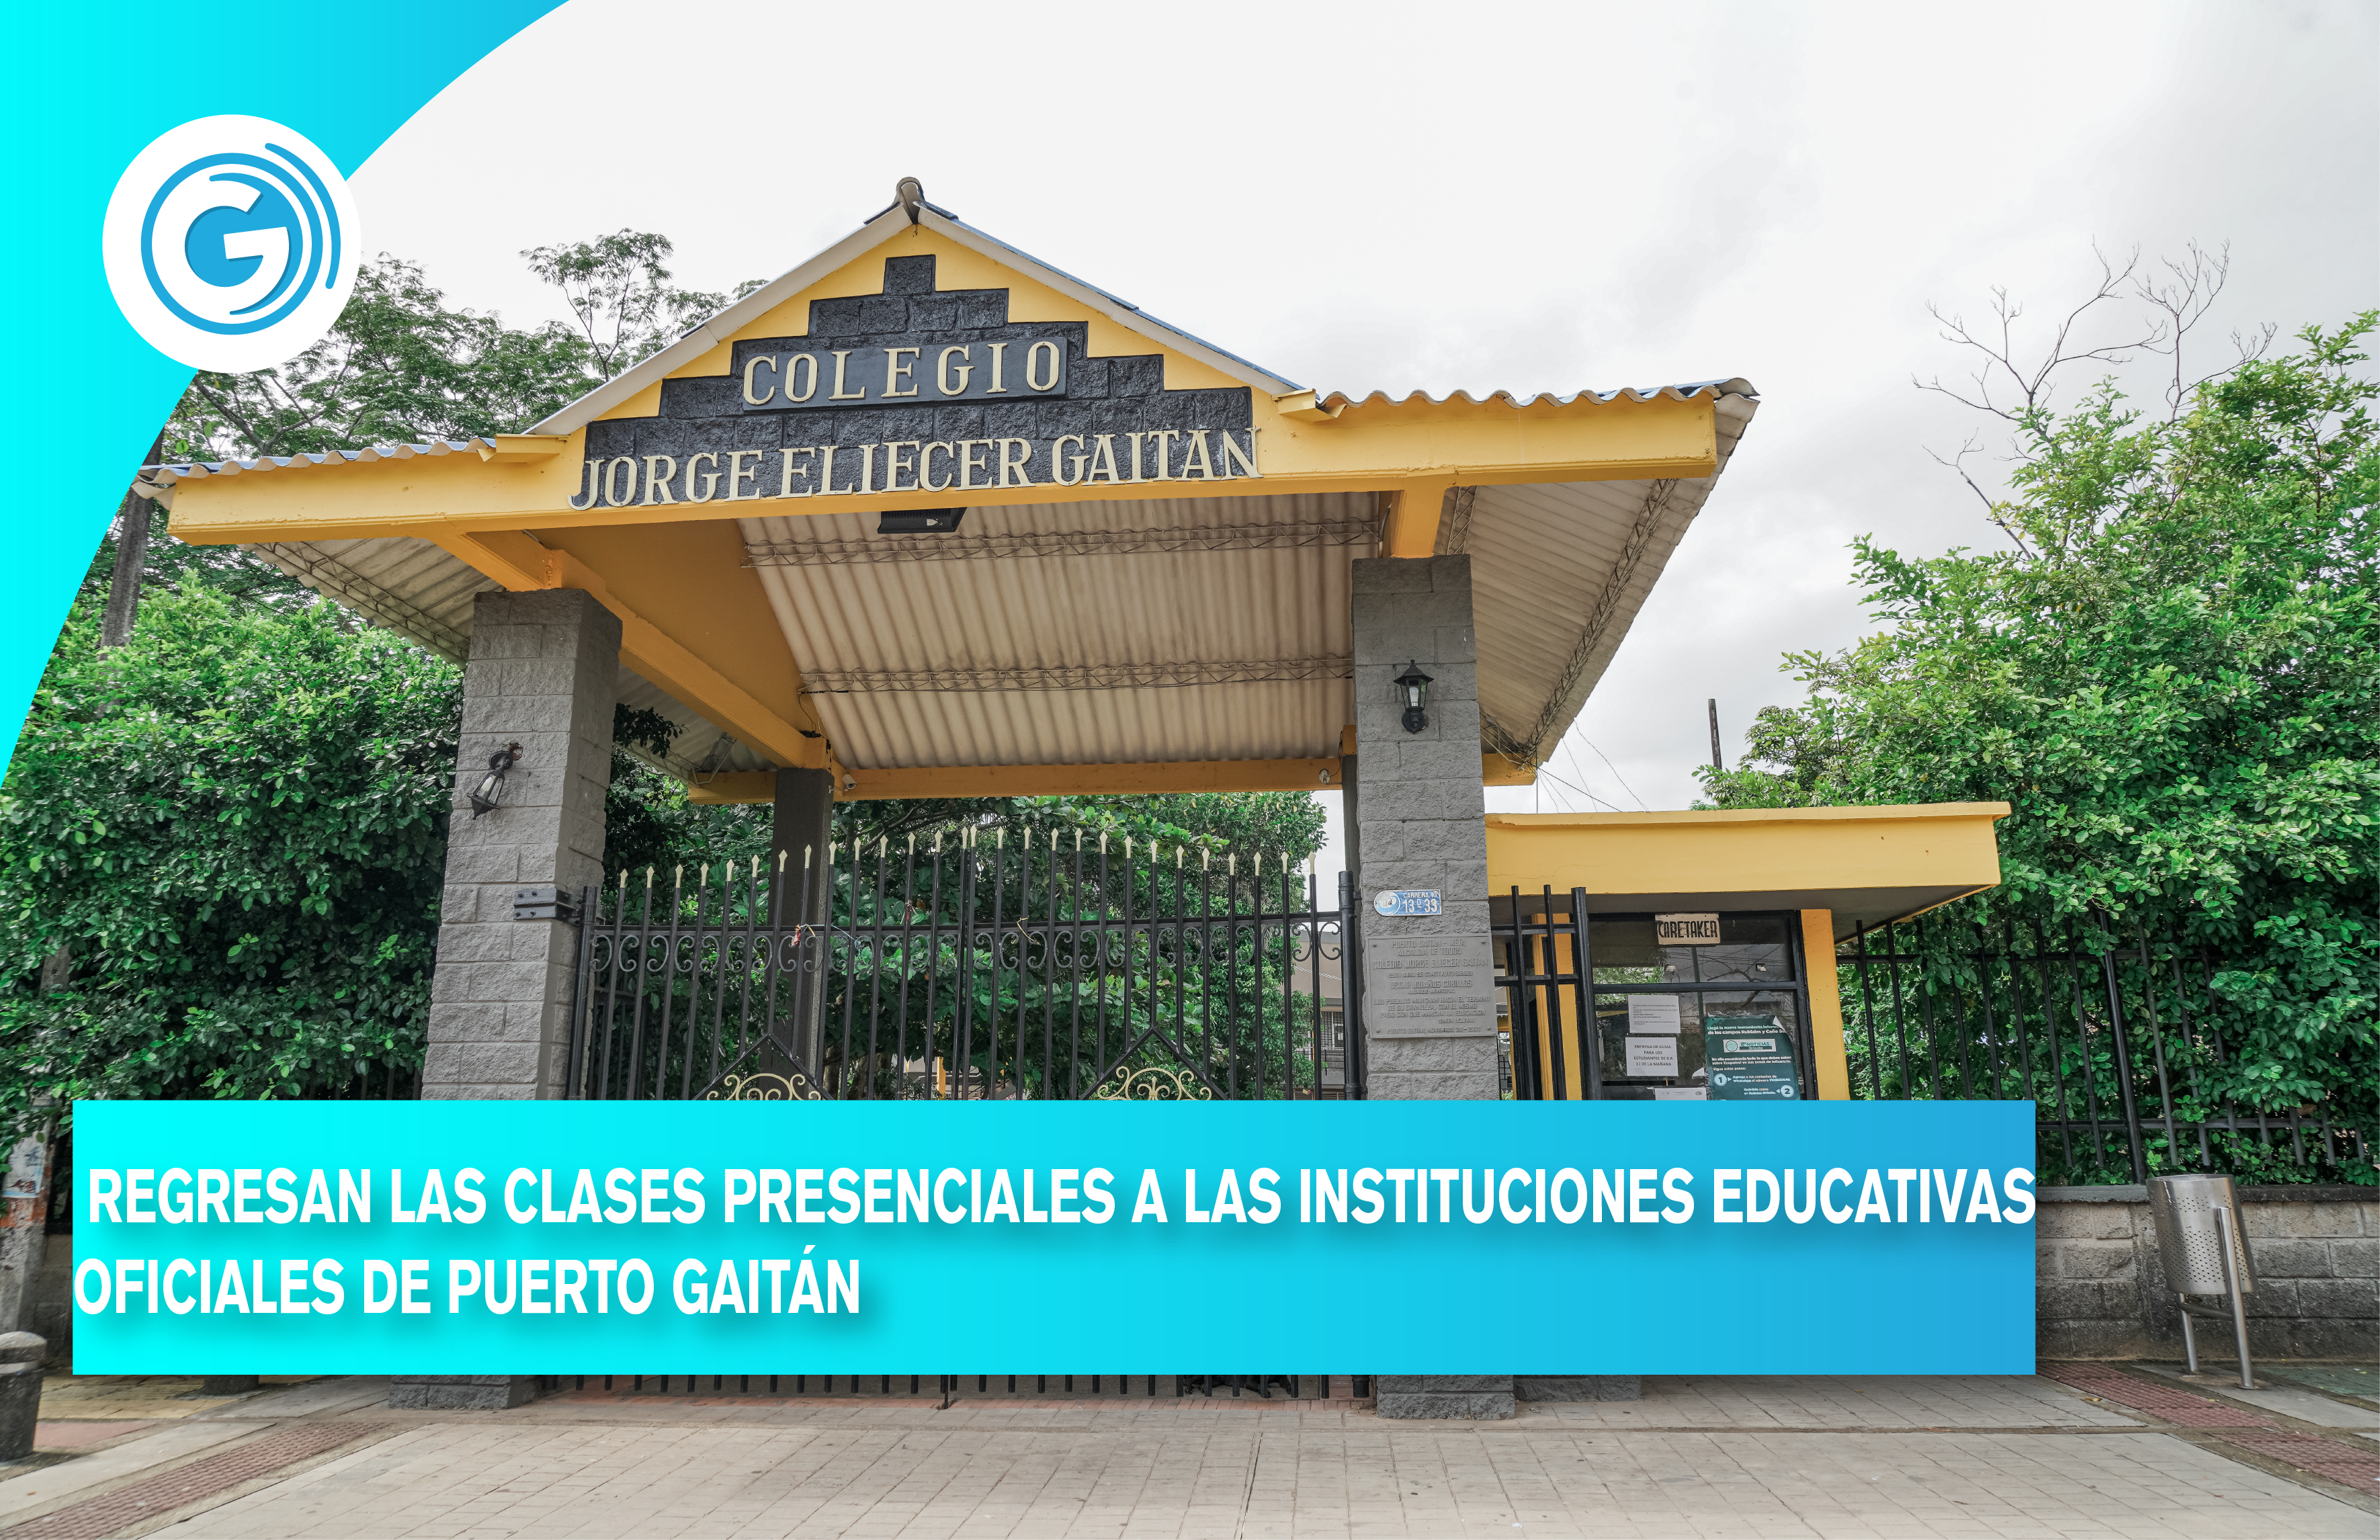 REGRESAN LAS CLASES PRESENCIALES A LAS INSTITUCIONES EDUCATIVAS OFICIALES DE PUERTO GAITÁN